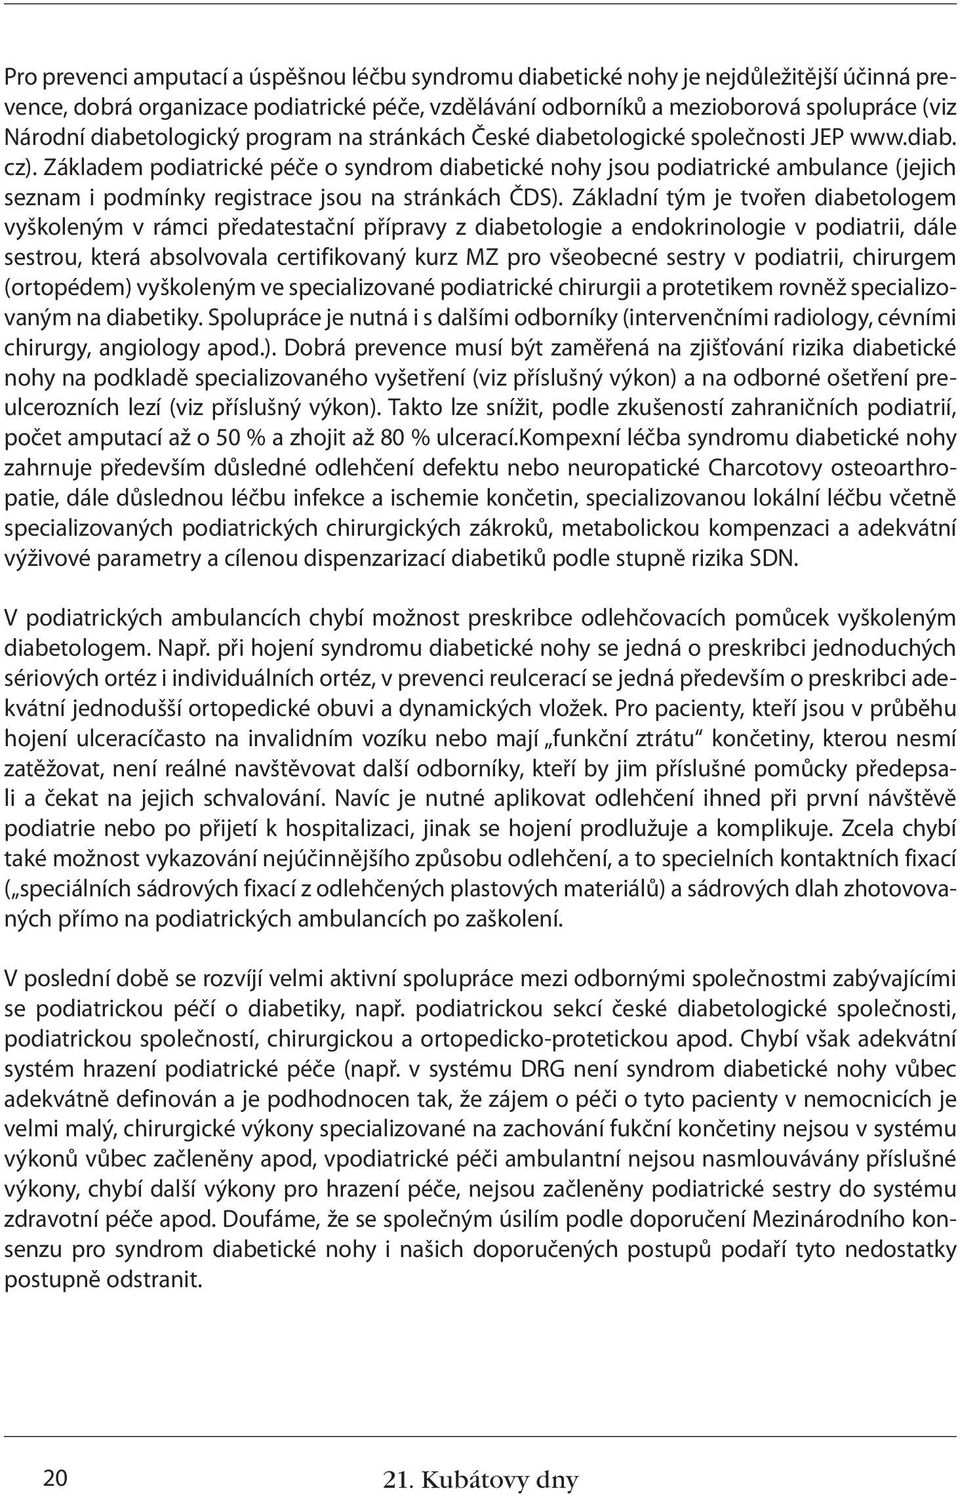 Základem podiatrické péče o syndrom diabetické nohy jsou podiatrické ambulance (jejich seznam i podmínky registrace jsou na stránkách ČDS).